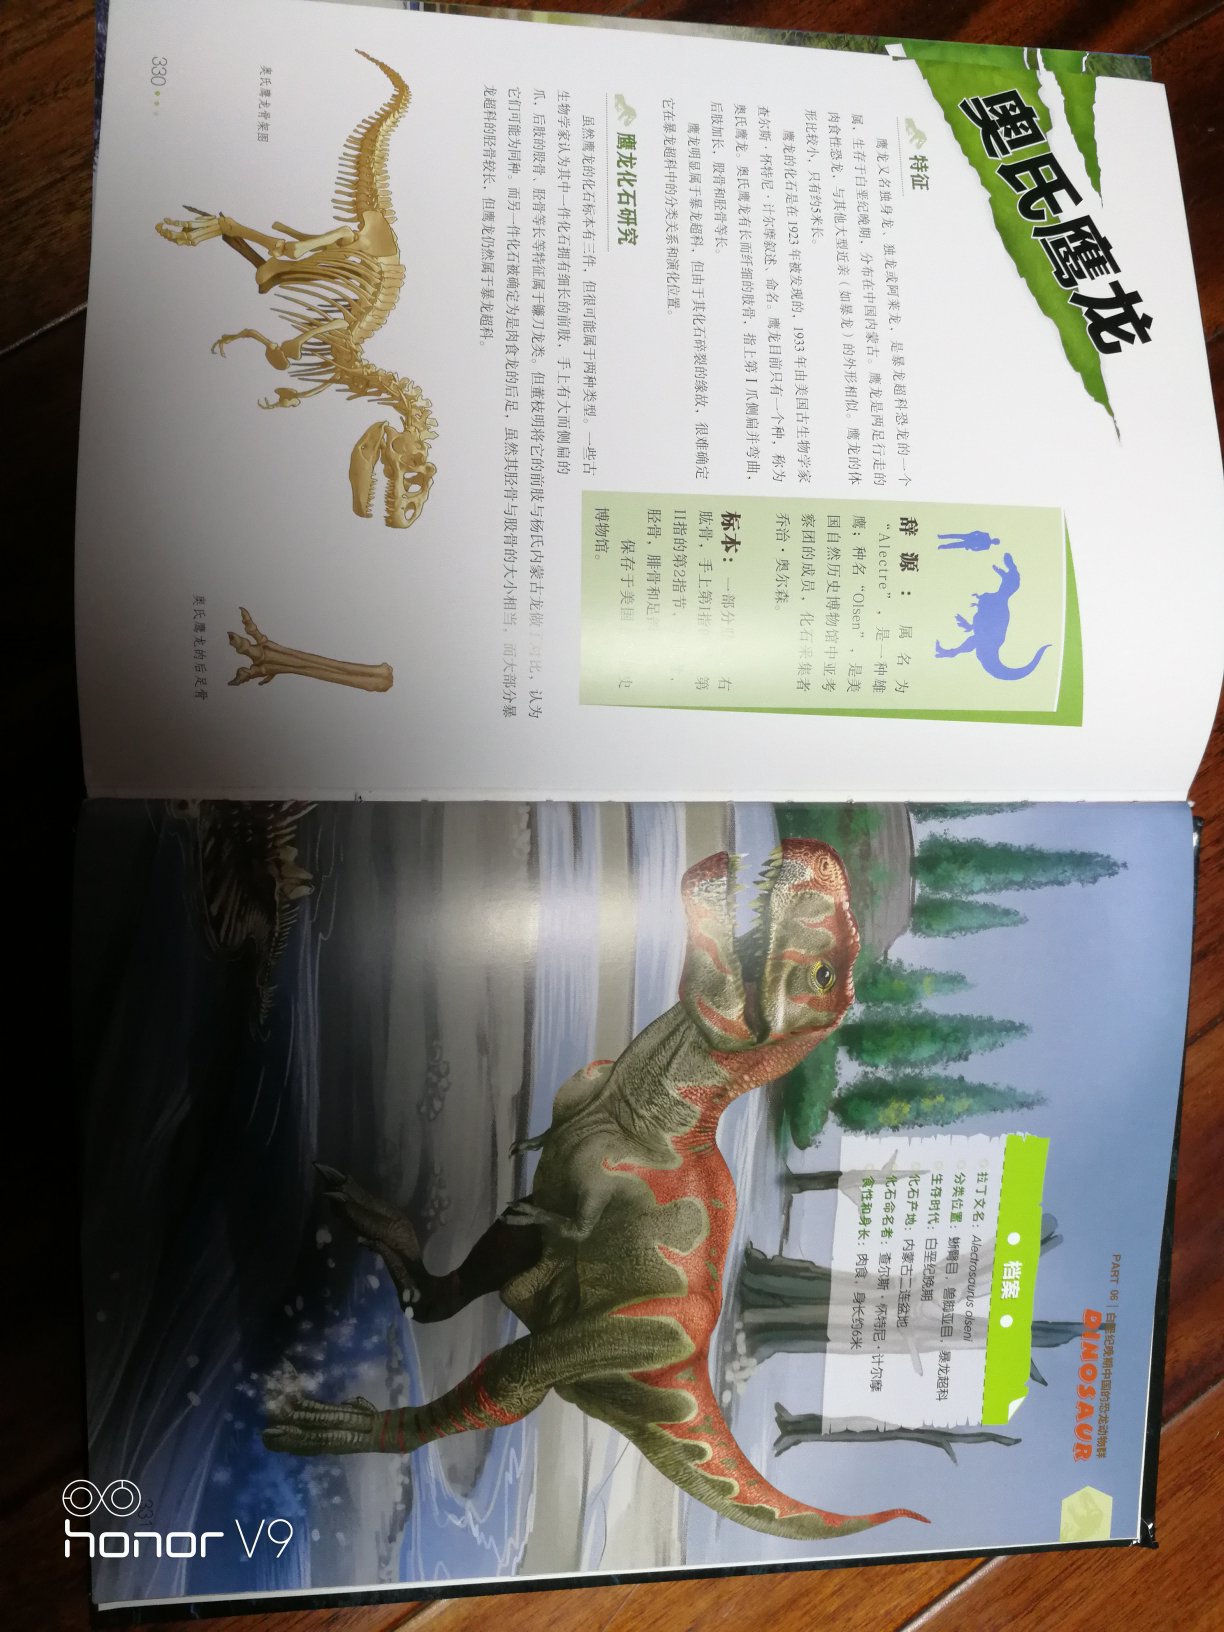 头天下单，第二天就到了，果然速度很快！拿到这本书，感觉赚到了，又大又厚一本，算彩页，铜版纸，太划算了。再说内容，这本书是我见过的介绍恐龙最全的书了，感觉像是恐龙界的新华字典，基本上2页介绍一种恐龙，一共有338页，160多种恐龙，我都惊讶考古家们怎么从一堆堆骨头里，编出那么多名字。喜欢恐龙的小读者看这本书肯定会大呼过瘾，可以在小朋友面前显摆了。当个恐龙知识的小专家都不难，这本书真的非常好，值得买。